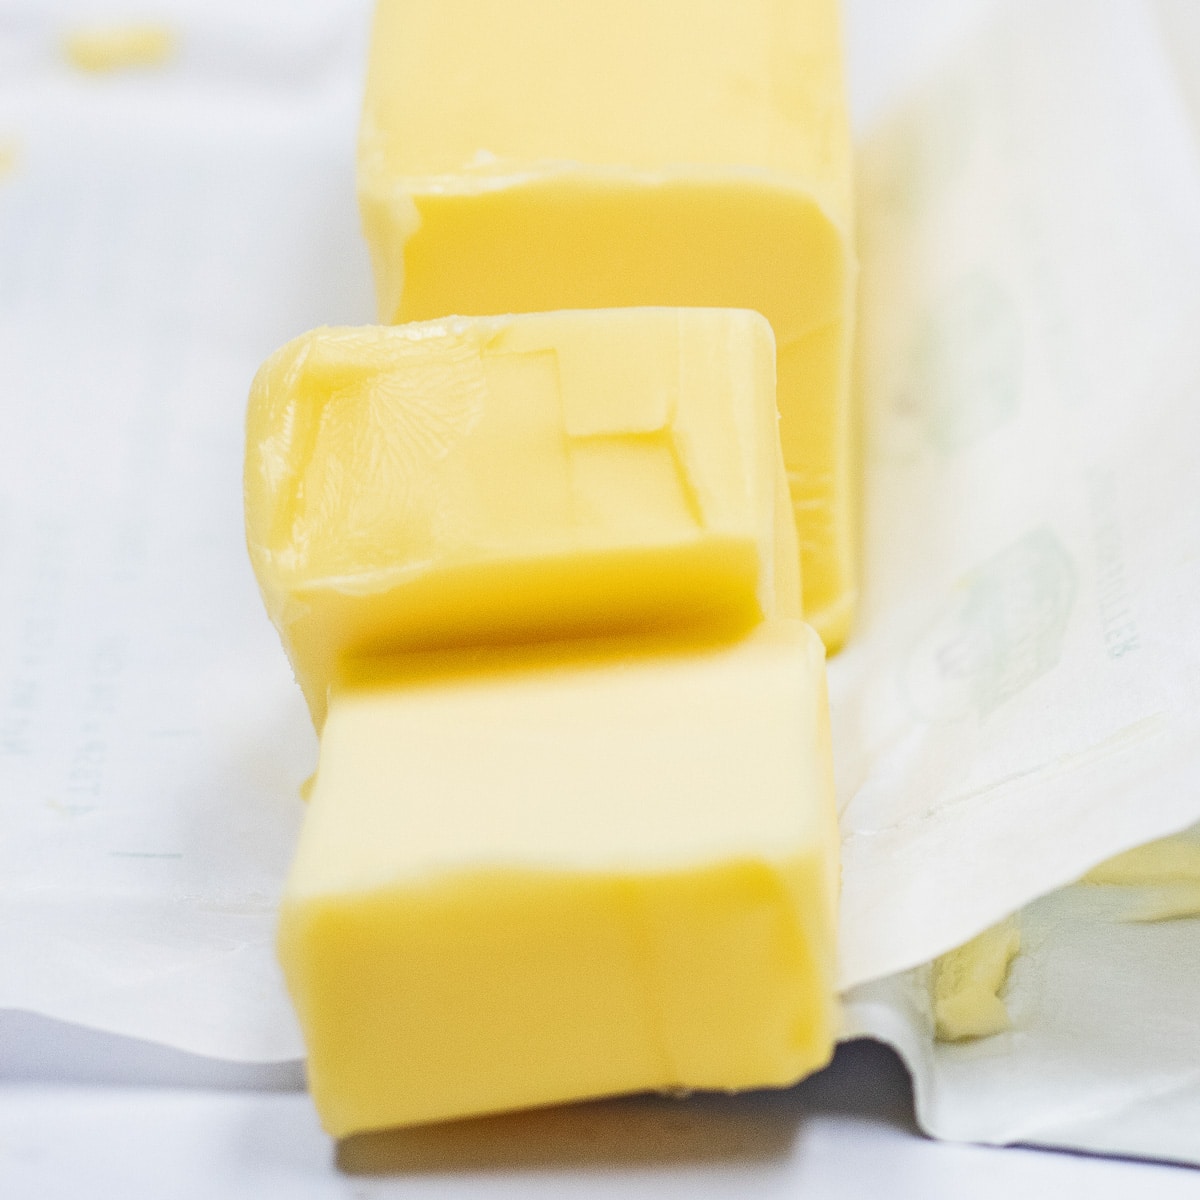 여기에 표시된 슬라이스 유럽 버터를 대체하는 최고의 버터 대체 옵션.